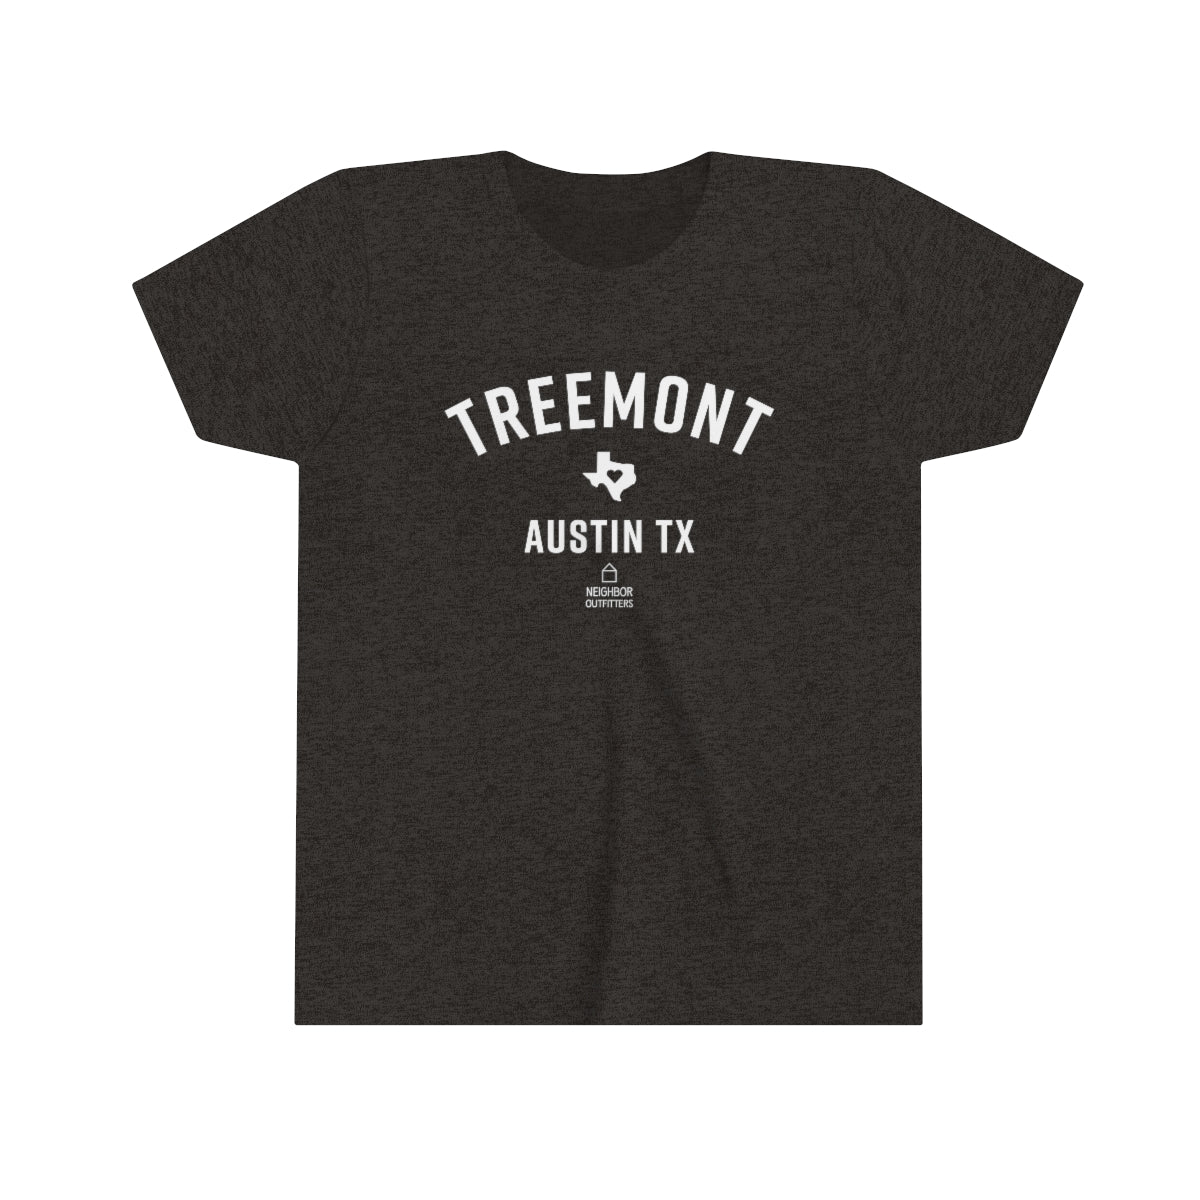 Kids Treemont T-shirt: "Full Hearts"